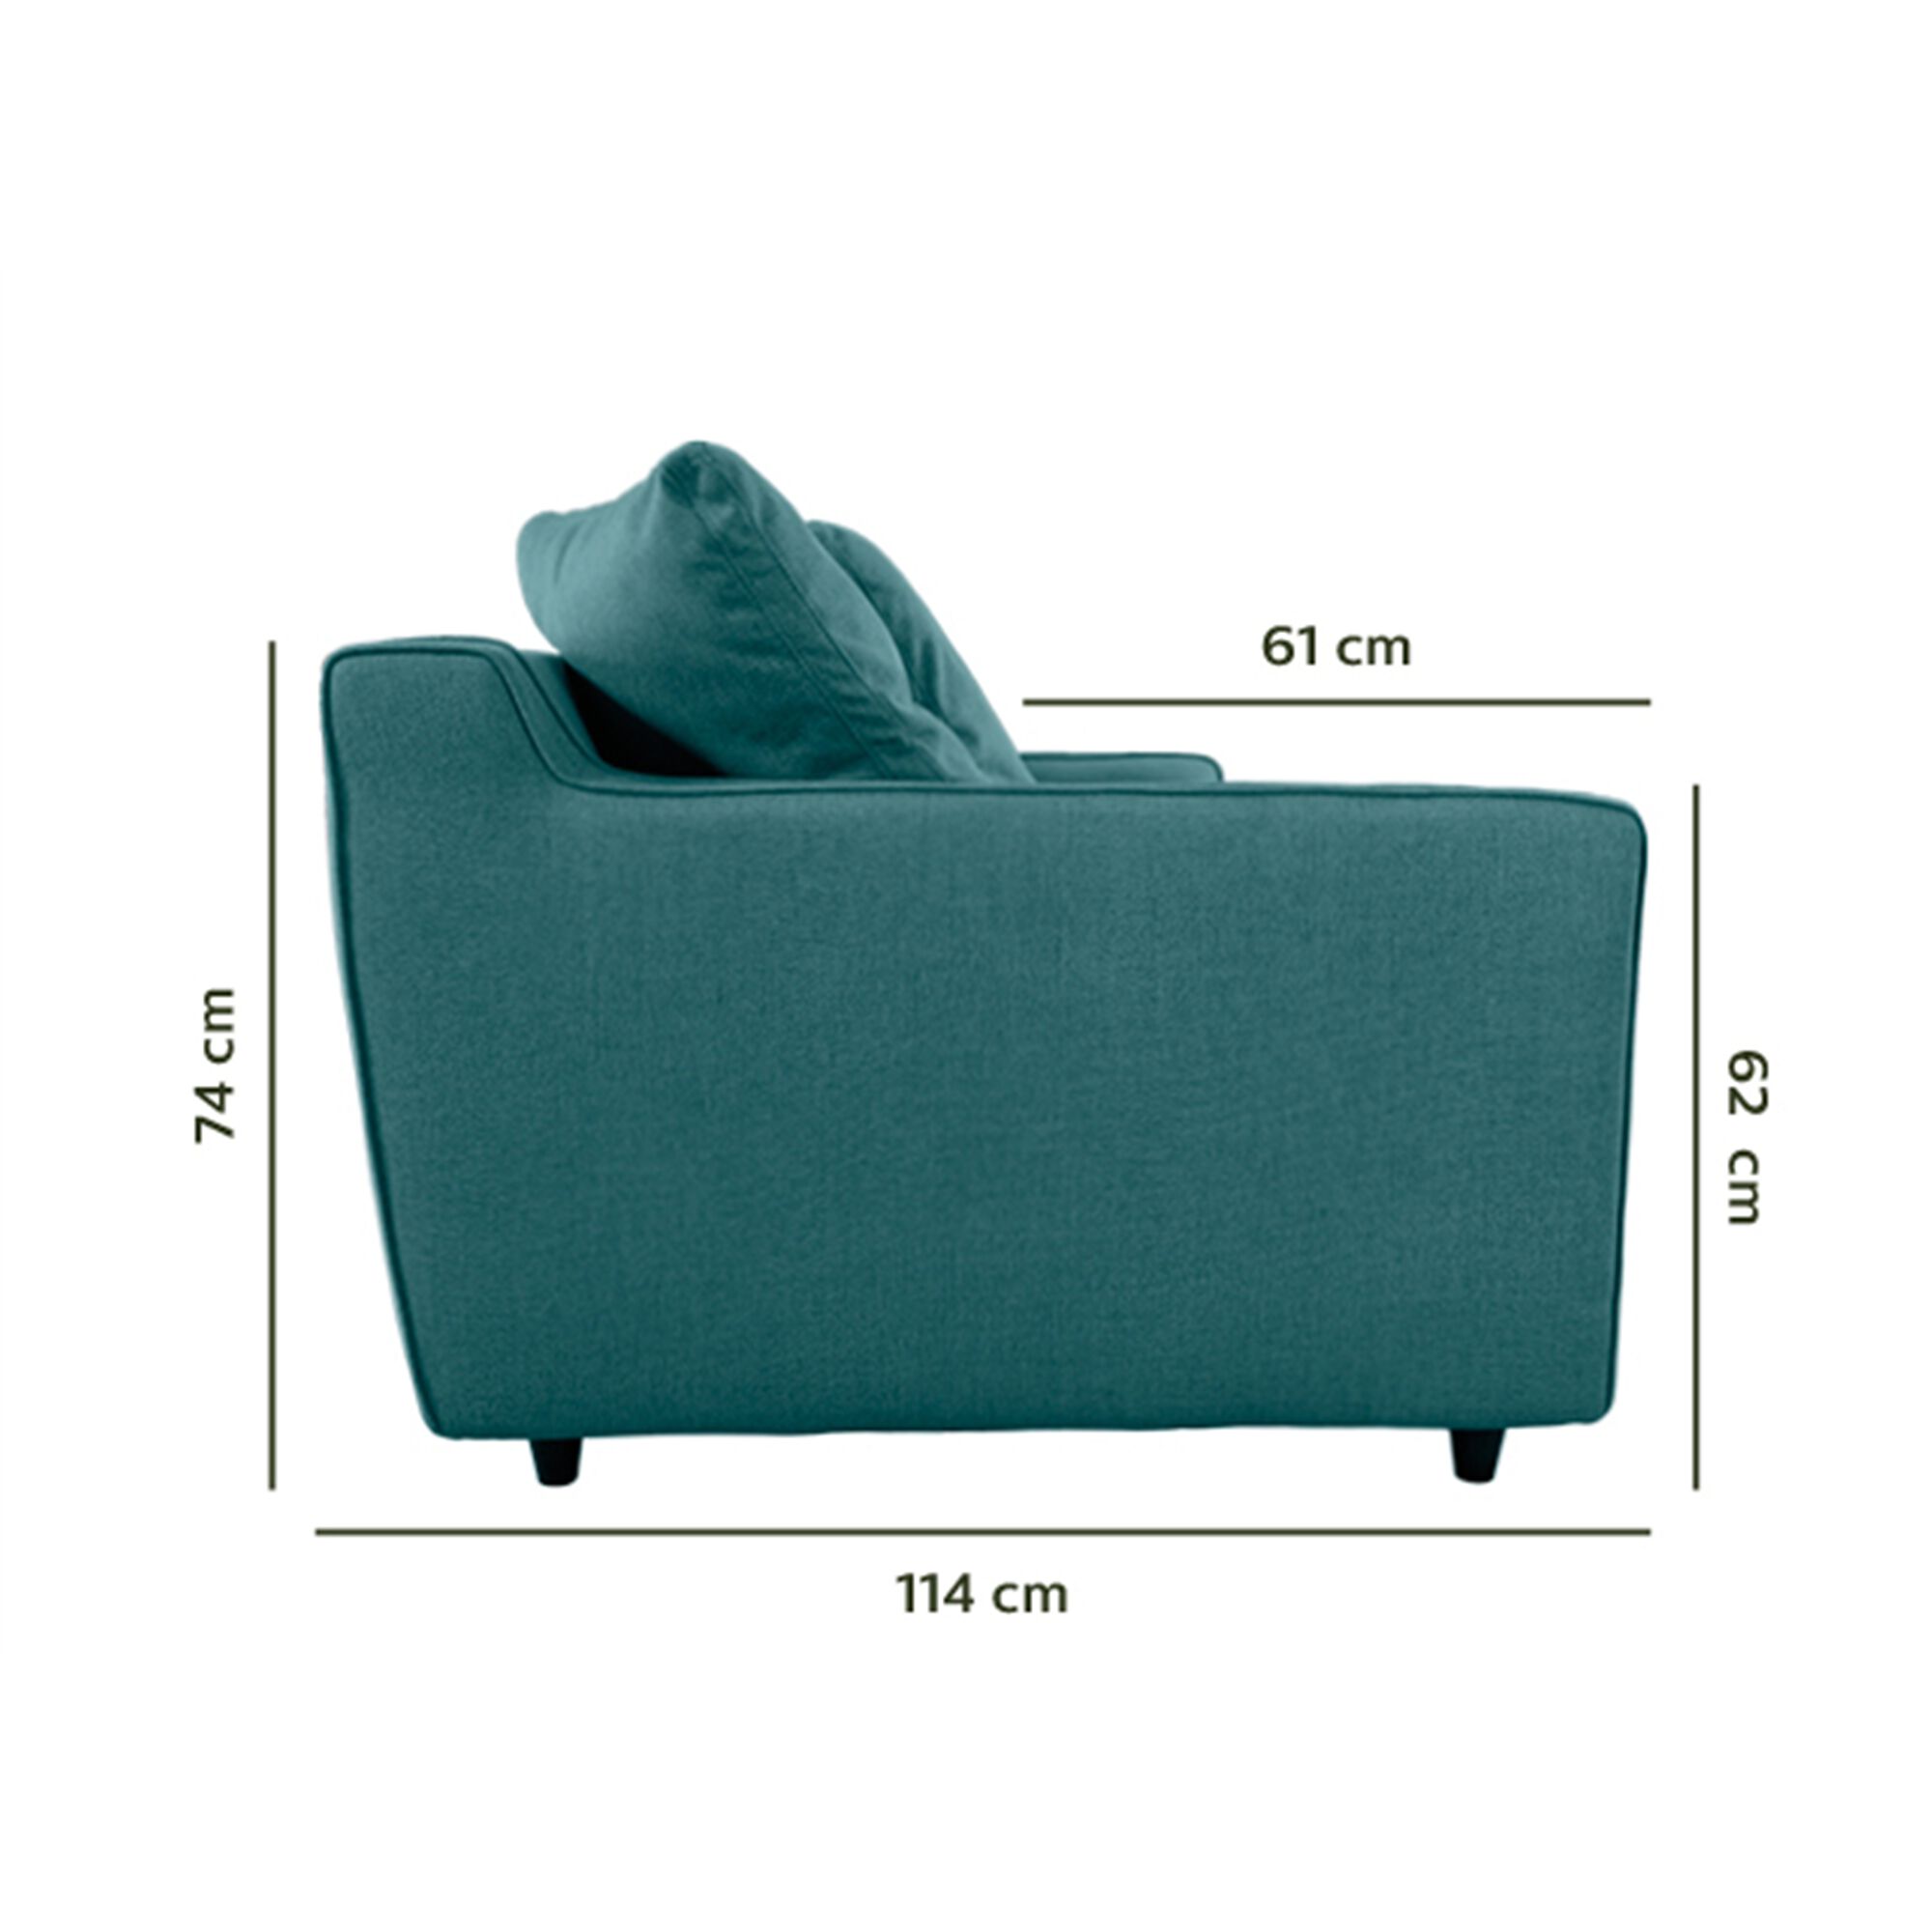 Canapé 3 places fixe en tissu - bleu niolon-LENITA